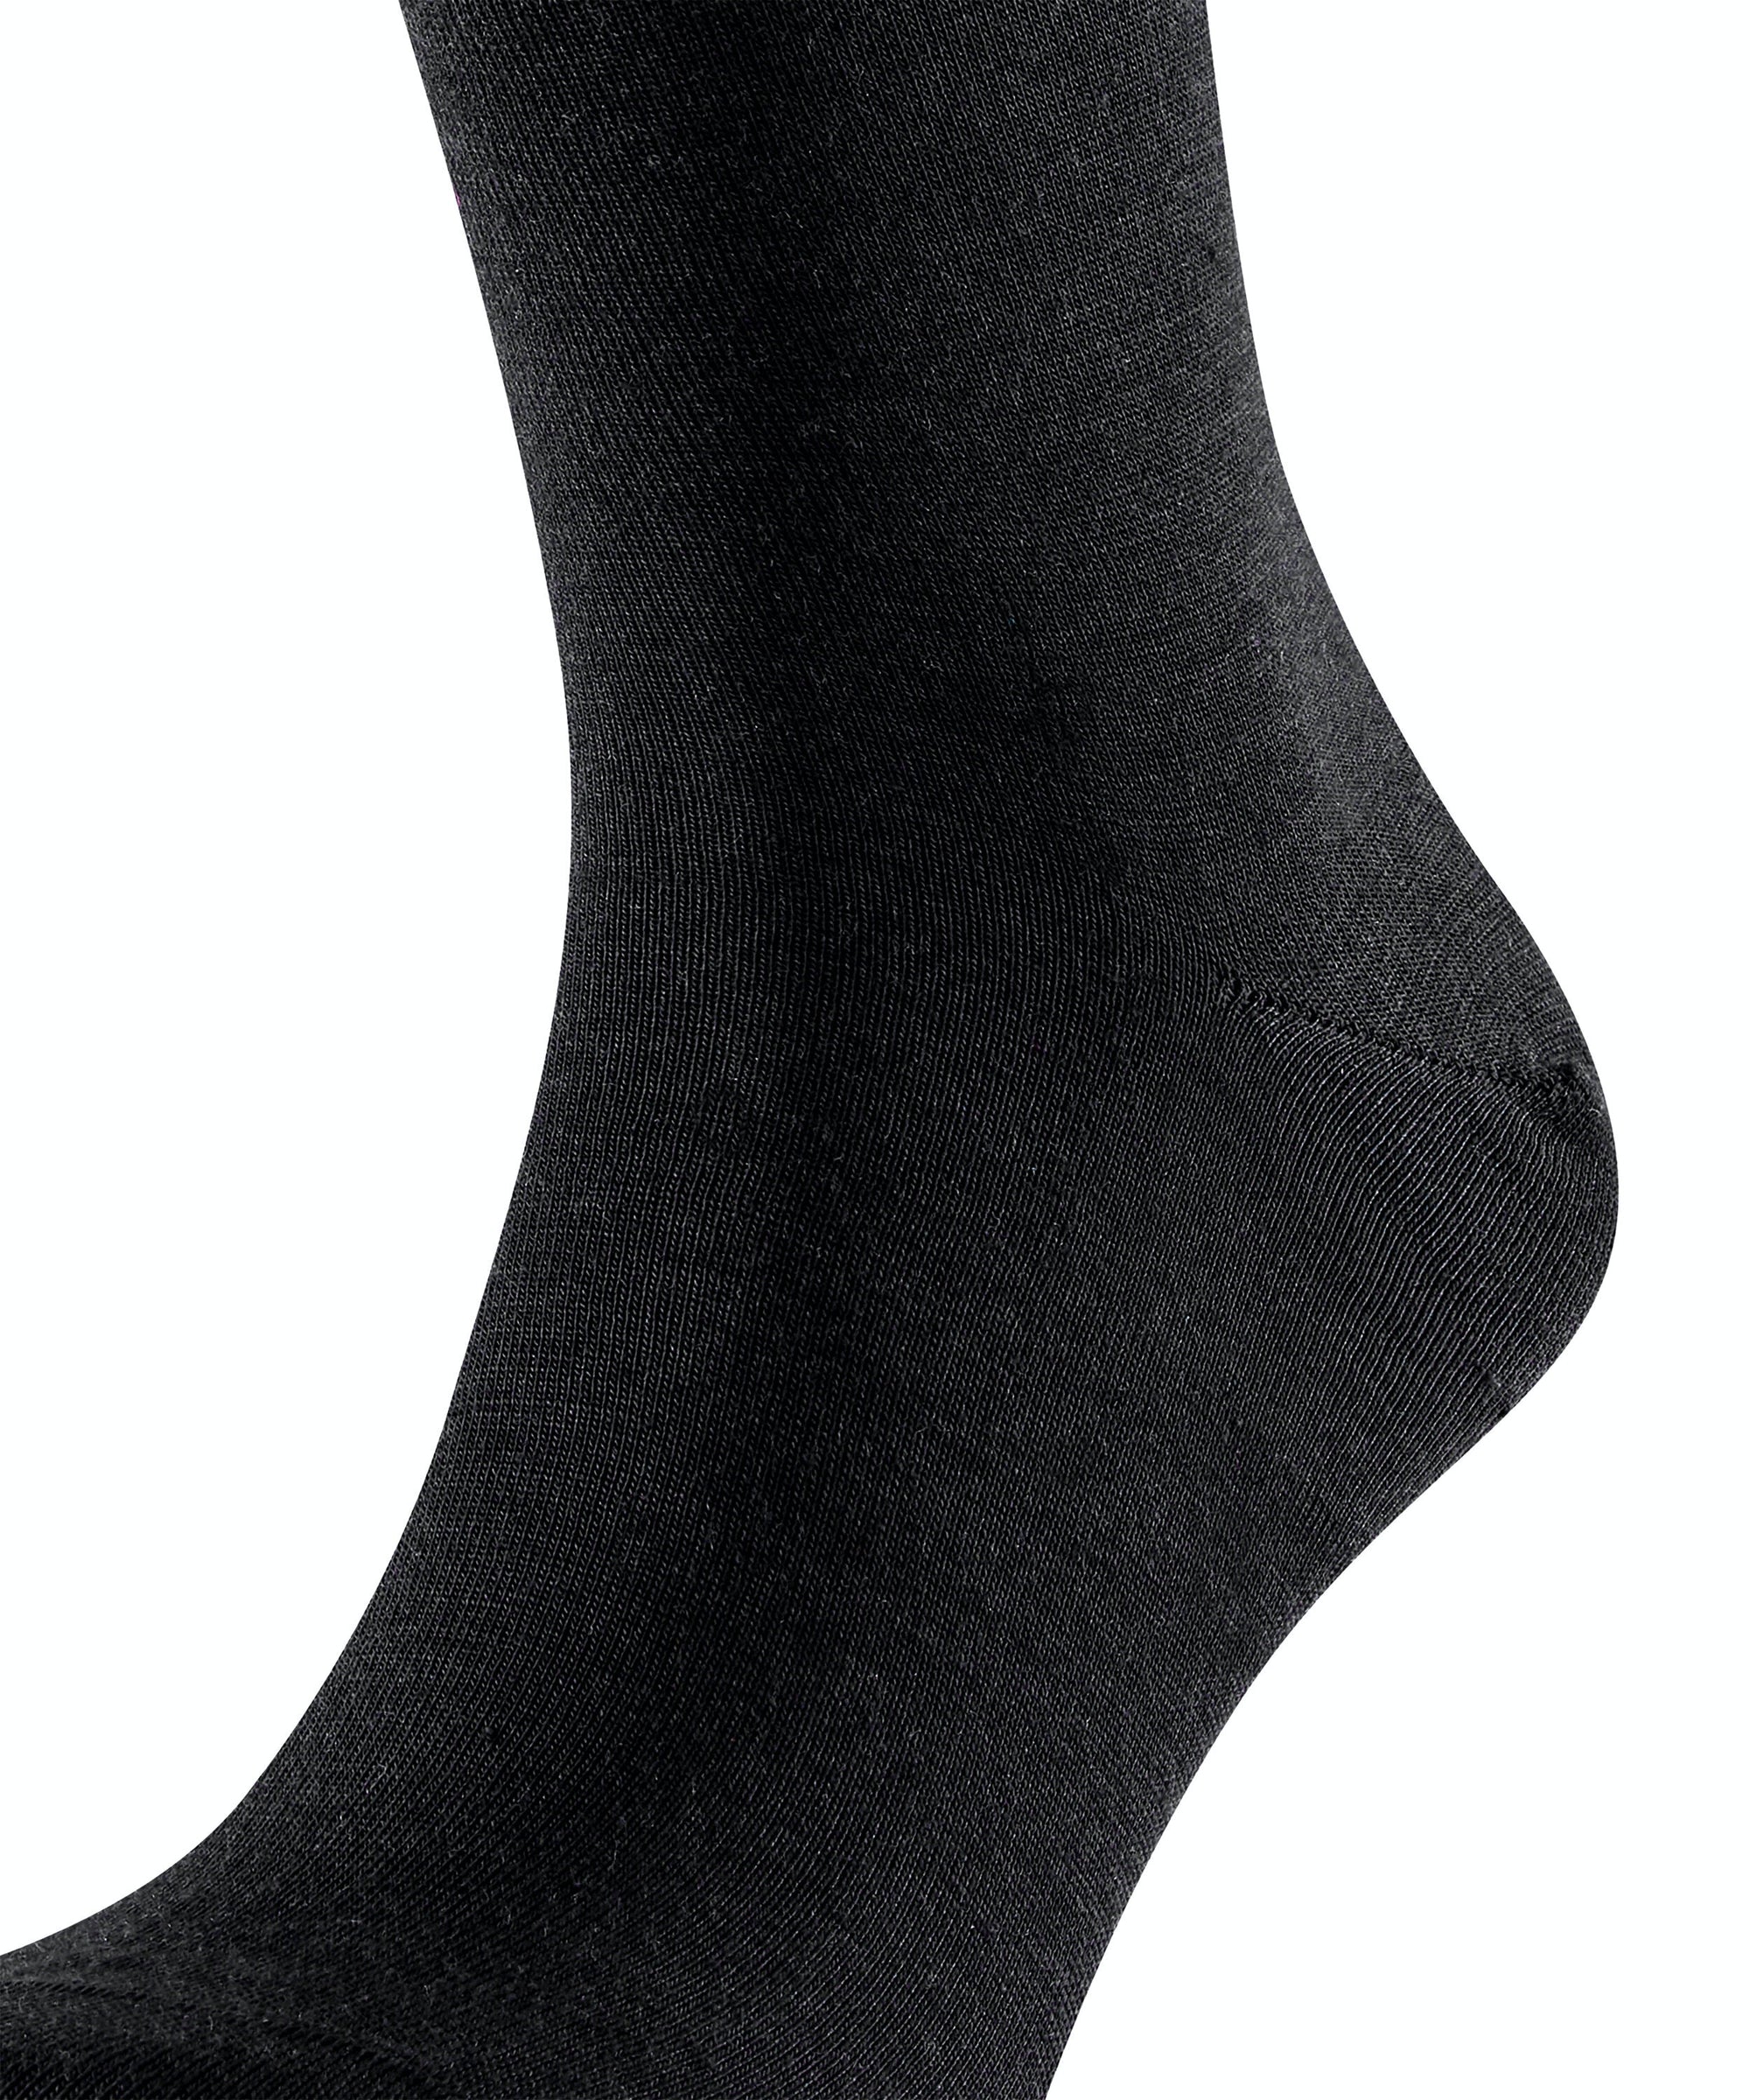 Falke Airport men's wool knee socks (knee height)